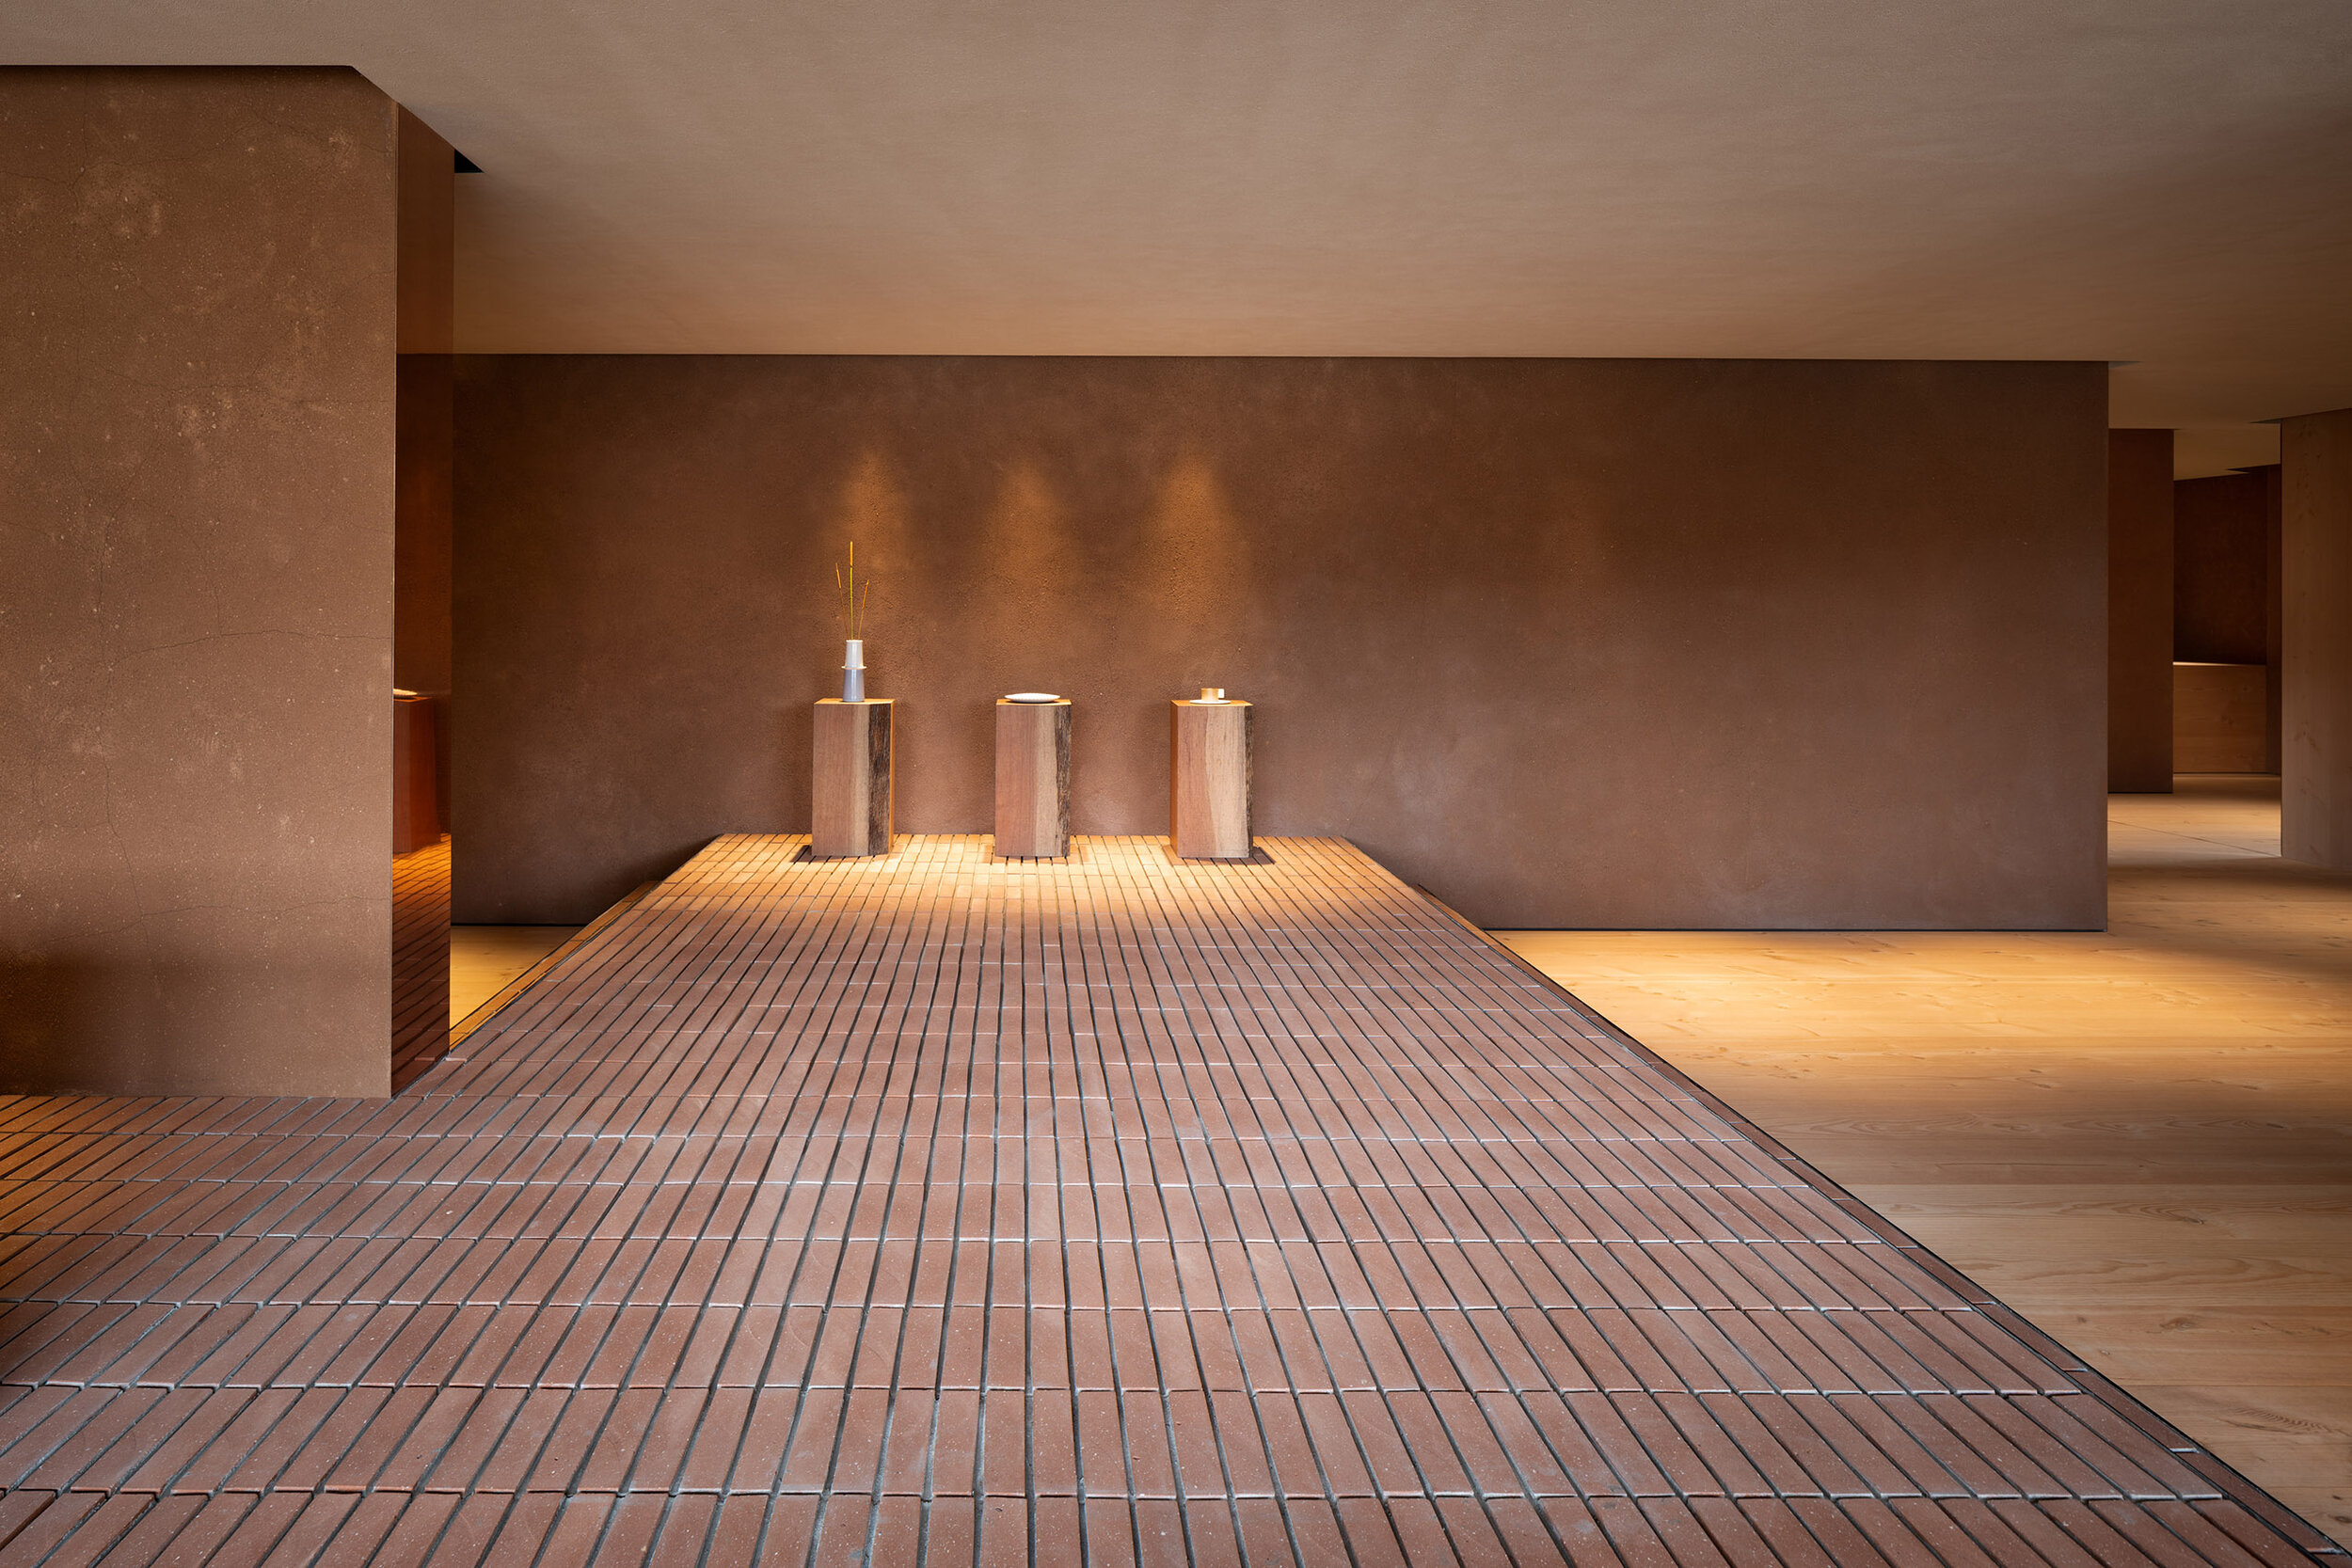  Teruhiro Yanagihara Studio has used custom-made bricks for 1616/arita japan showroom in Arita, Japan. 